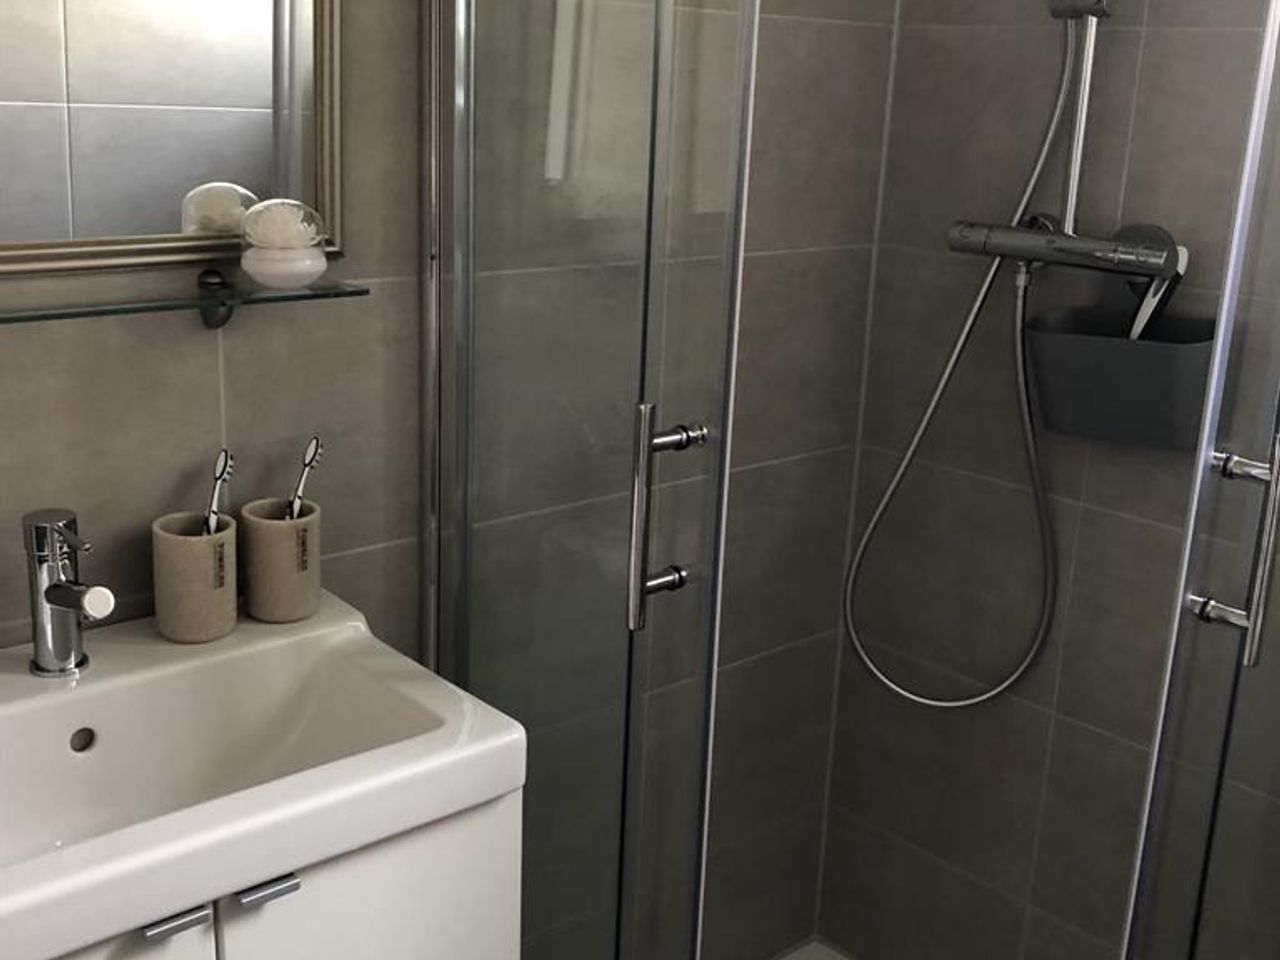 Bild vergrößern: Neues Badezimmer mit Dusche